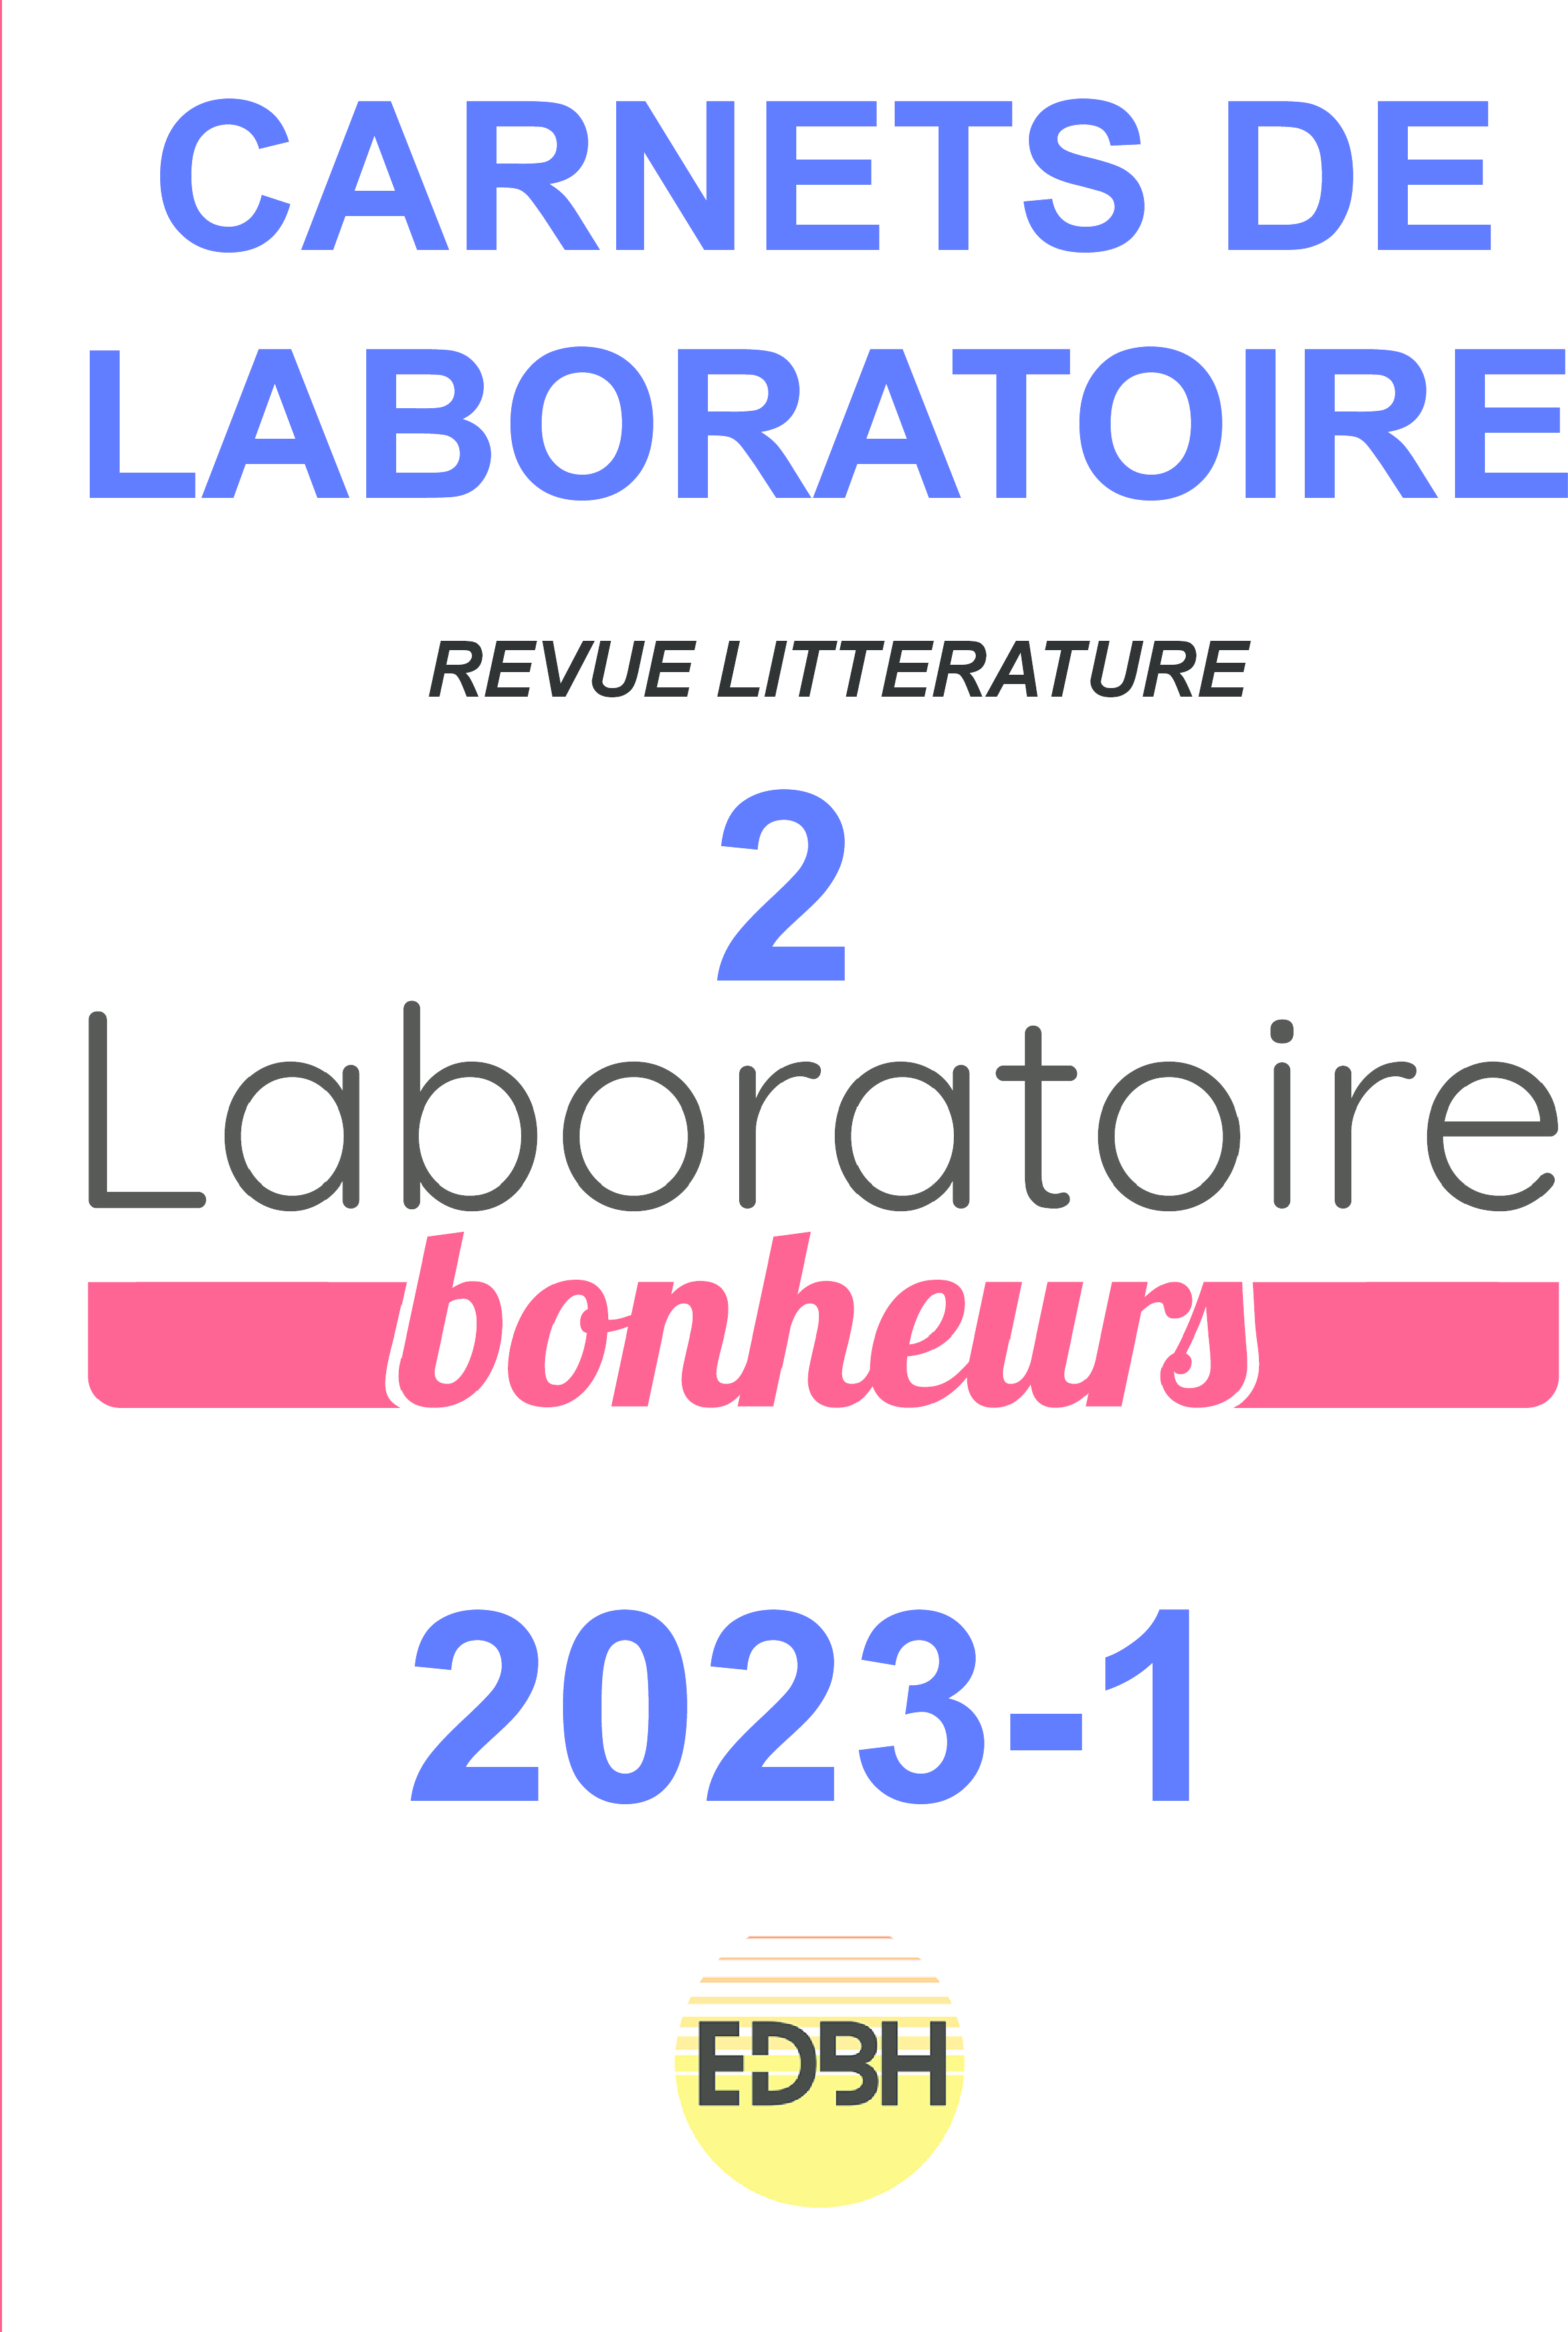 Carnet de Laboratoire RL-2 Bonheurs